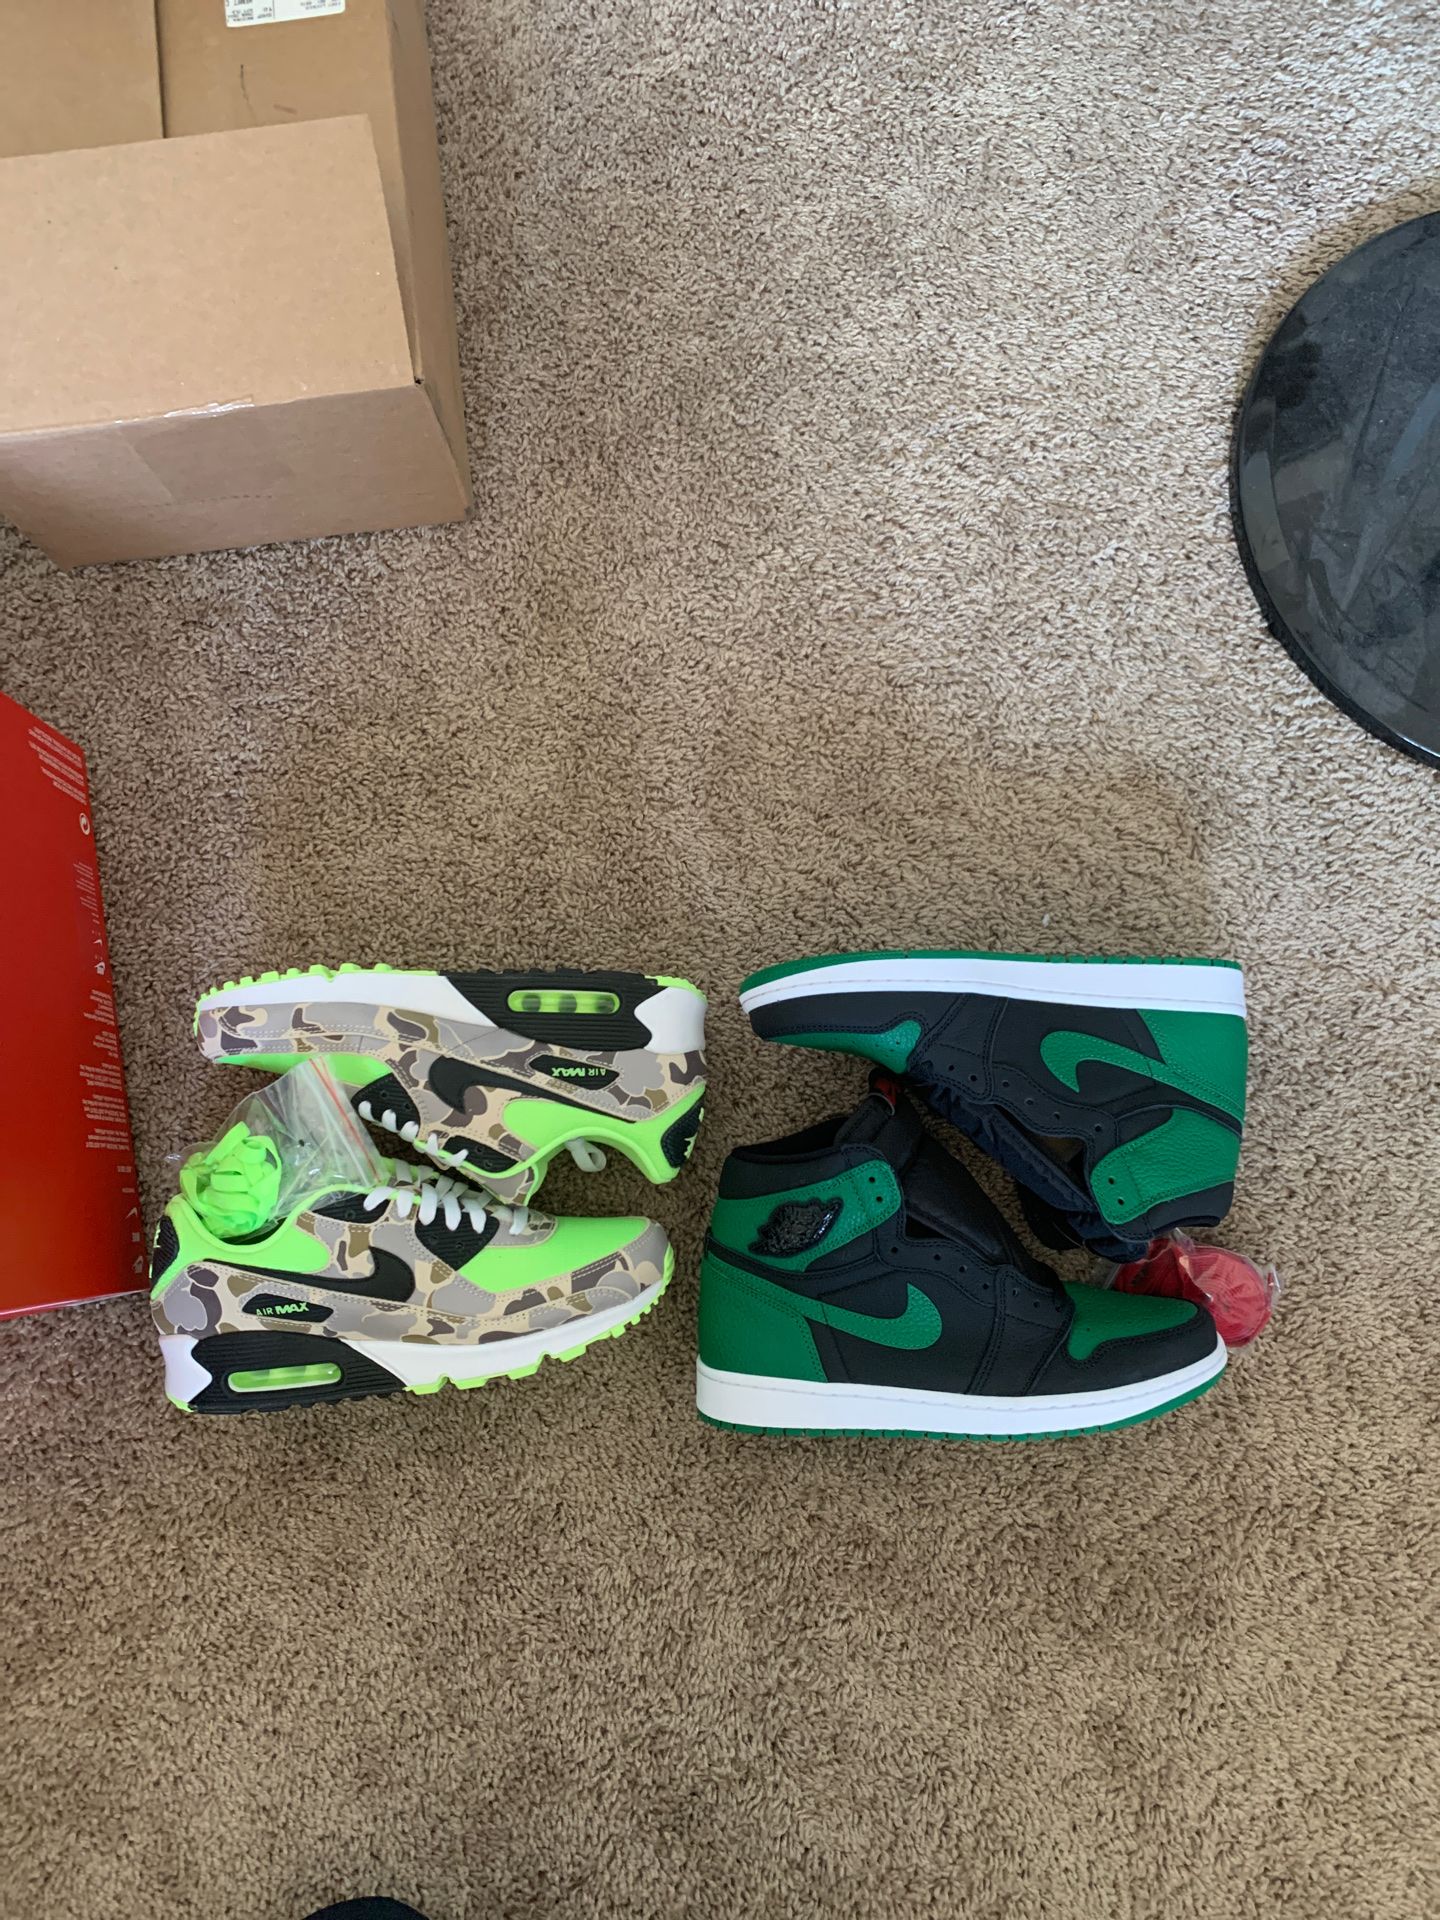 Nike air max 90s and Jordan 1s